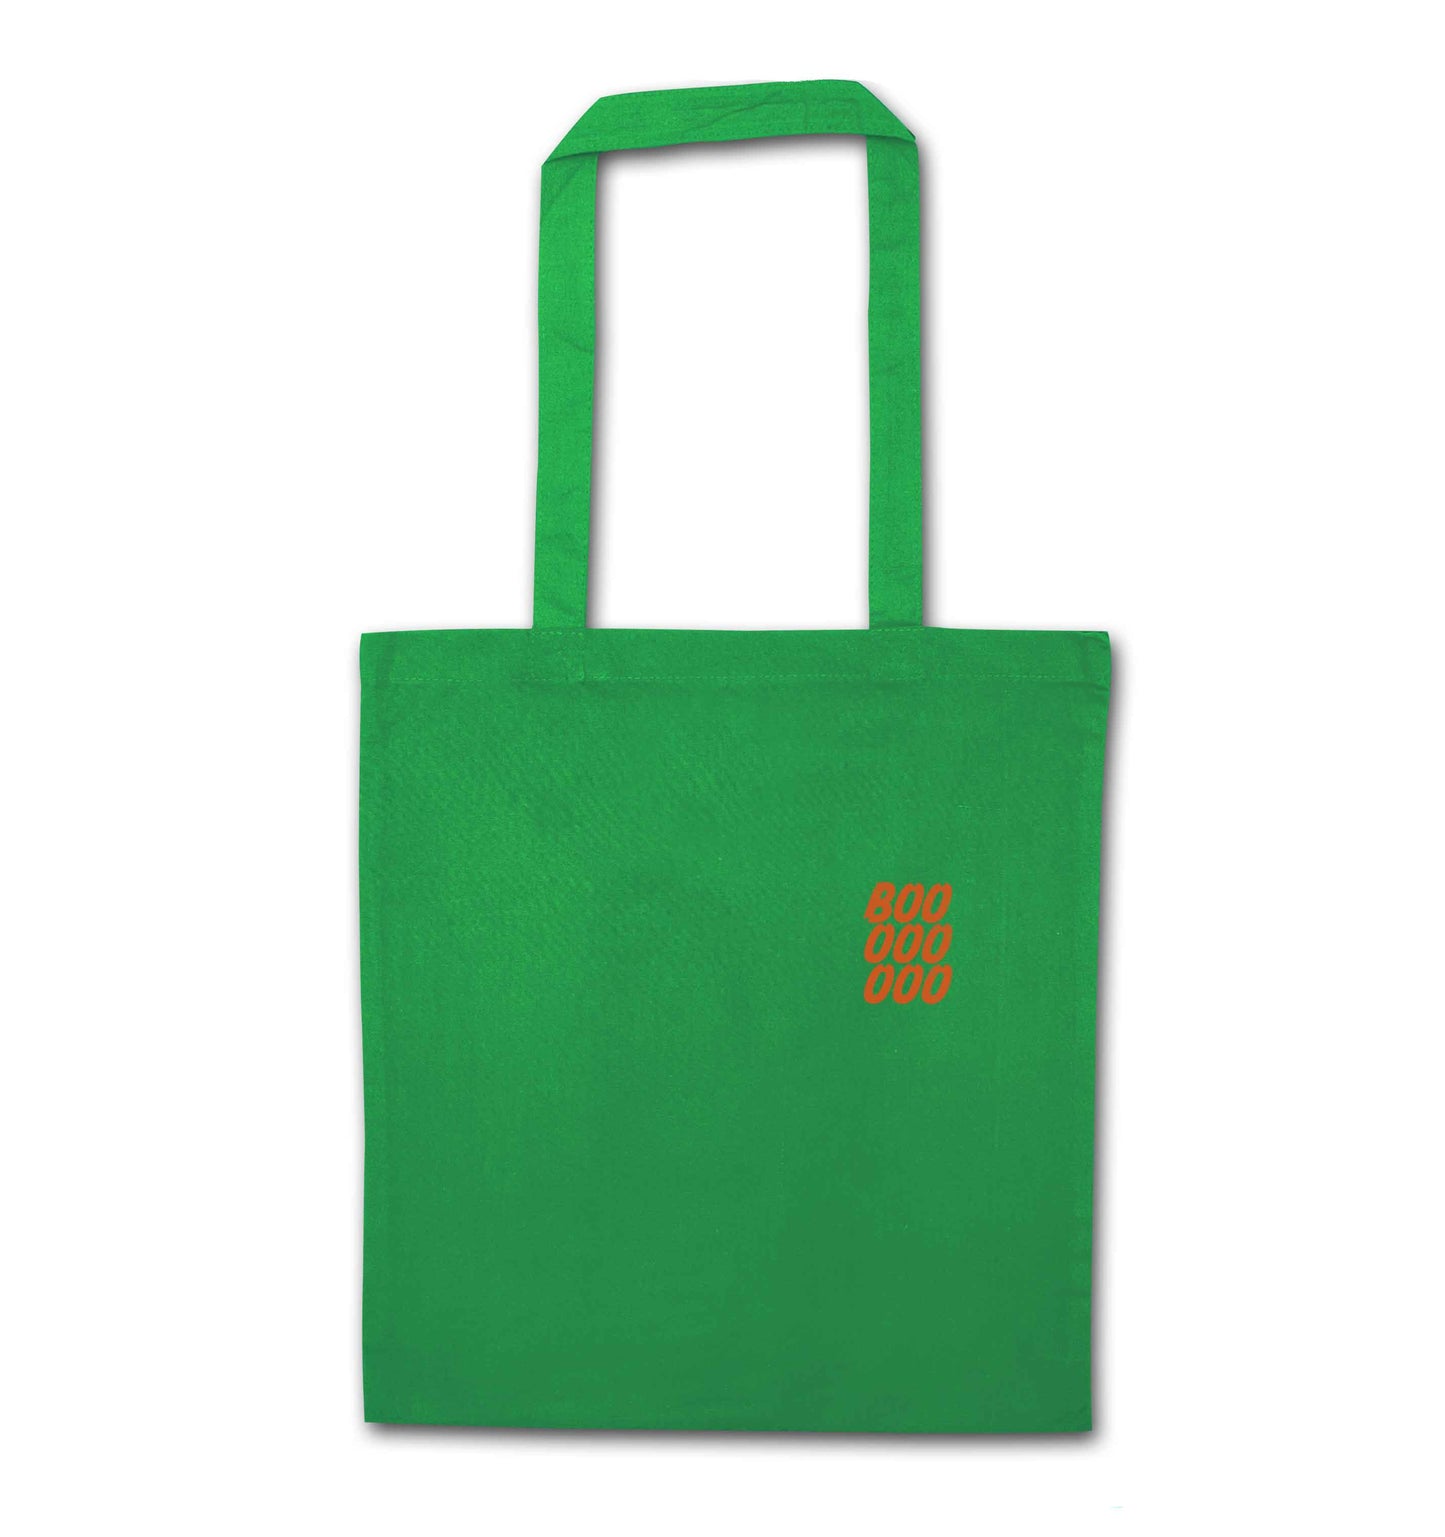 Boo pocket green tote bag